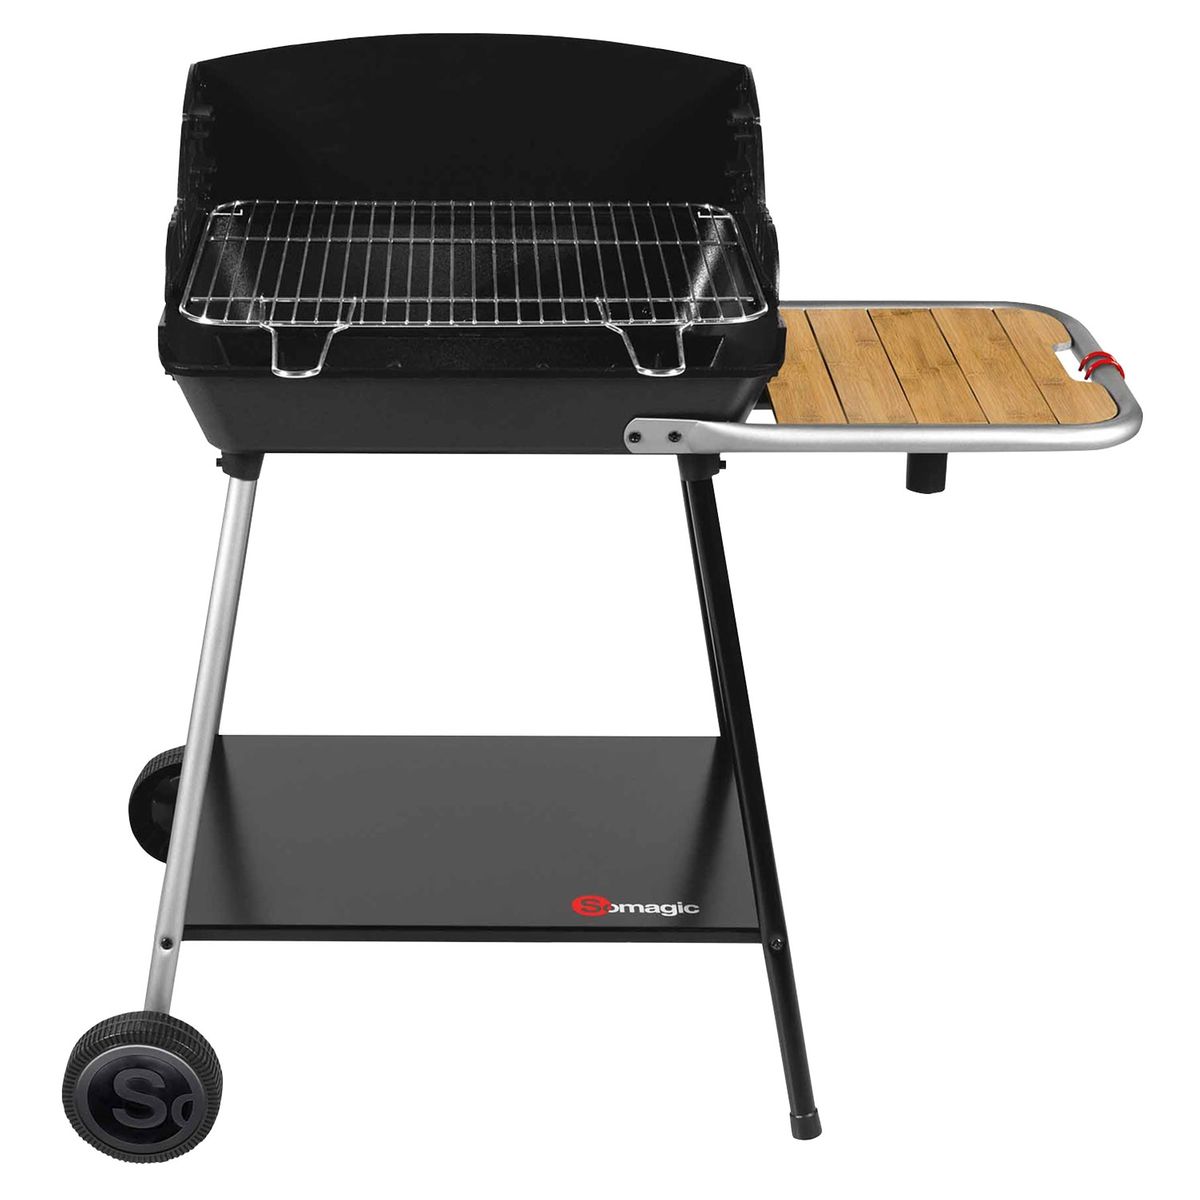 Rundgrill barbecue rond grill avec quatre critères réglage en hauteur Grill face 32 CM